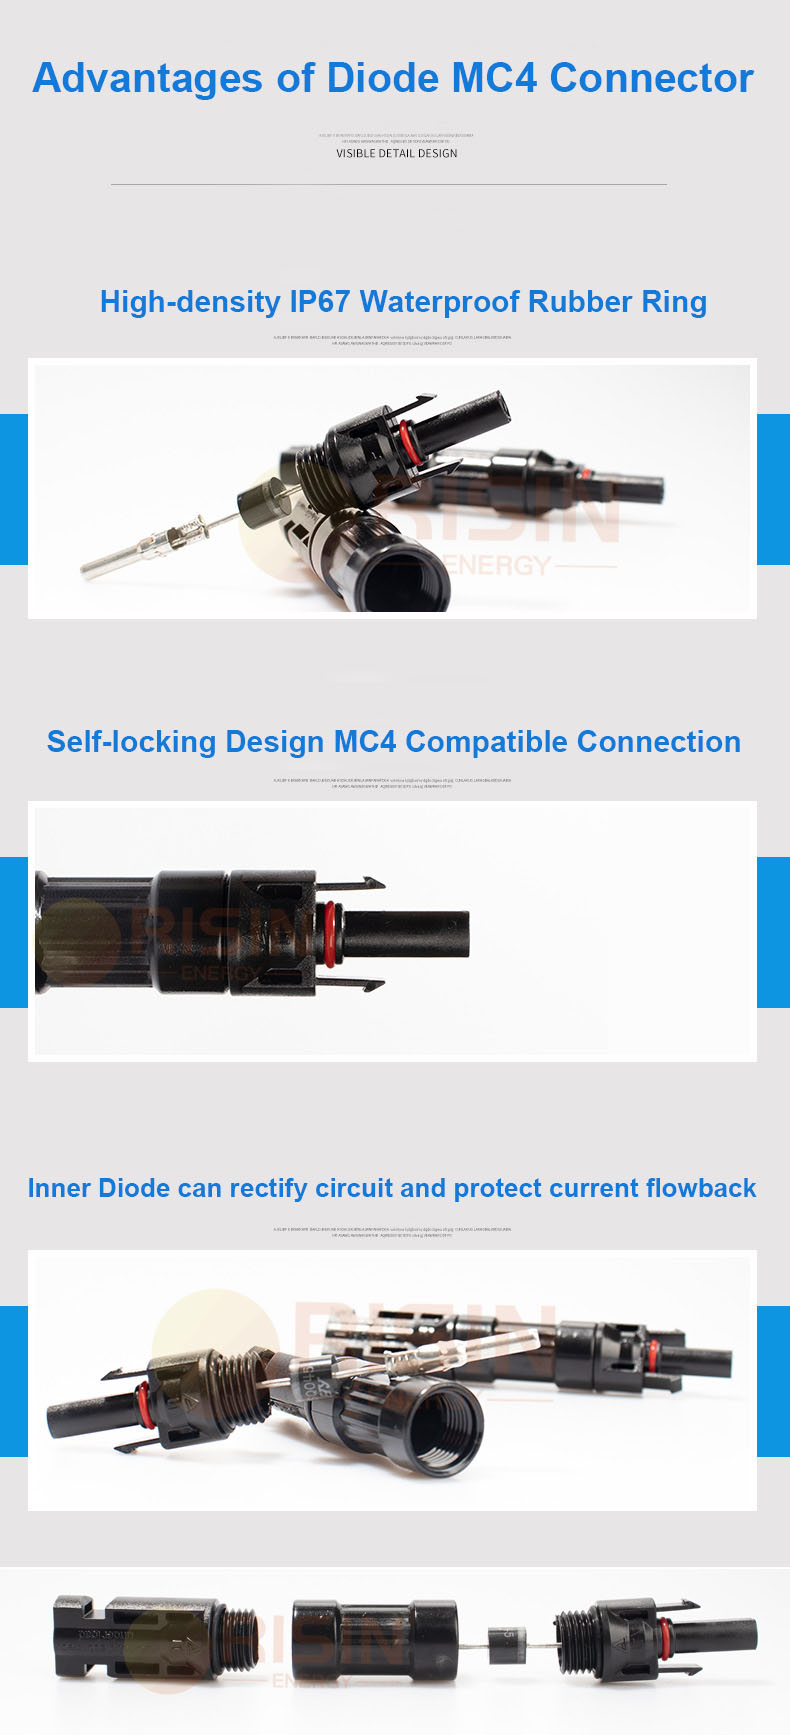 Diode MC4 voordelen: